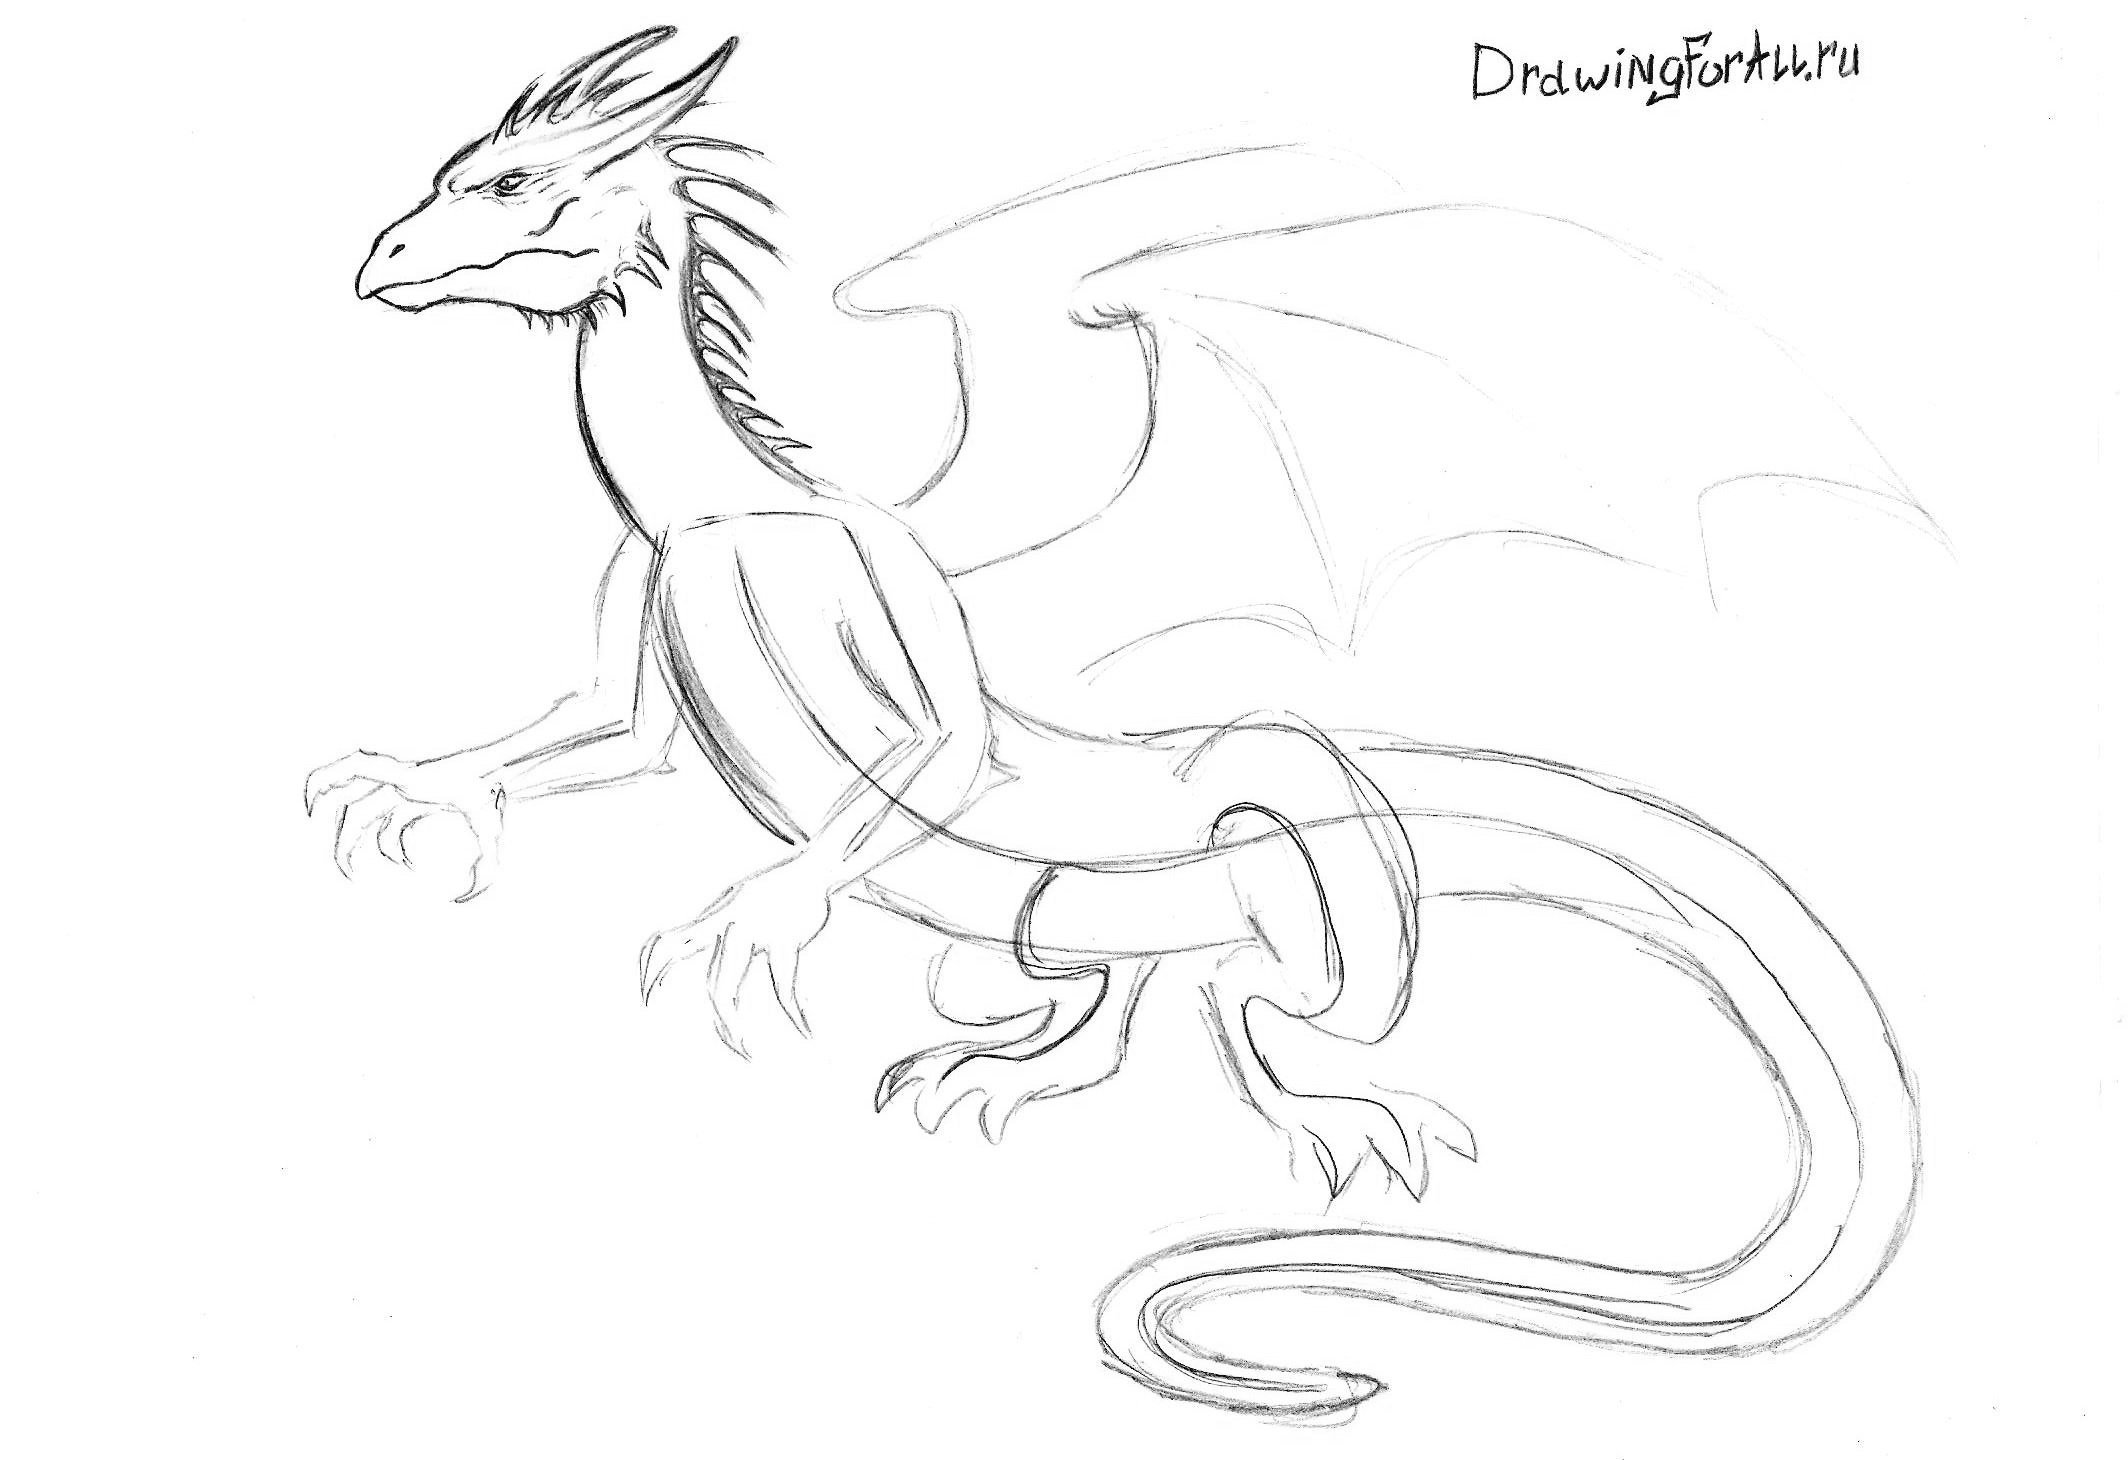 Пошаговые рисунки карандашом дракона